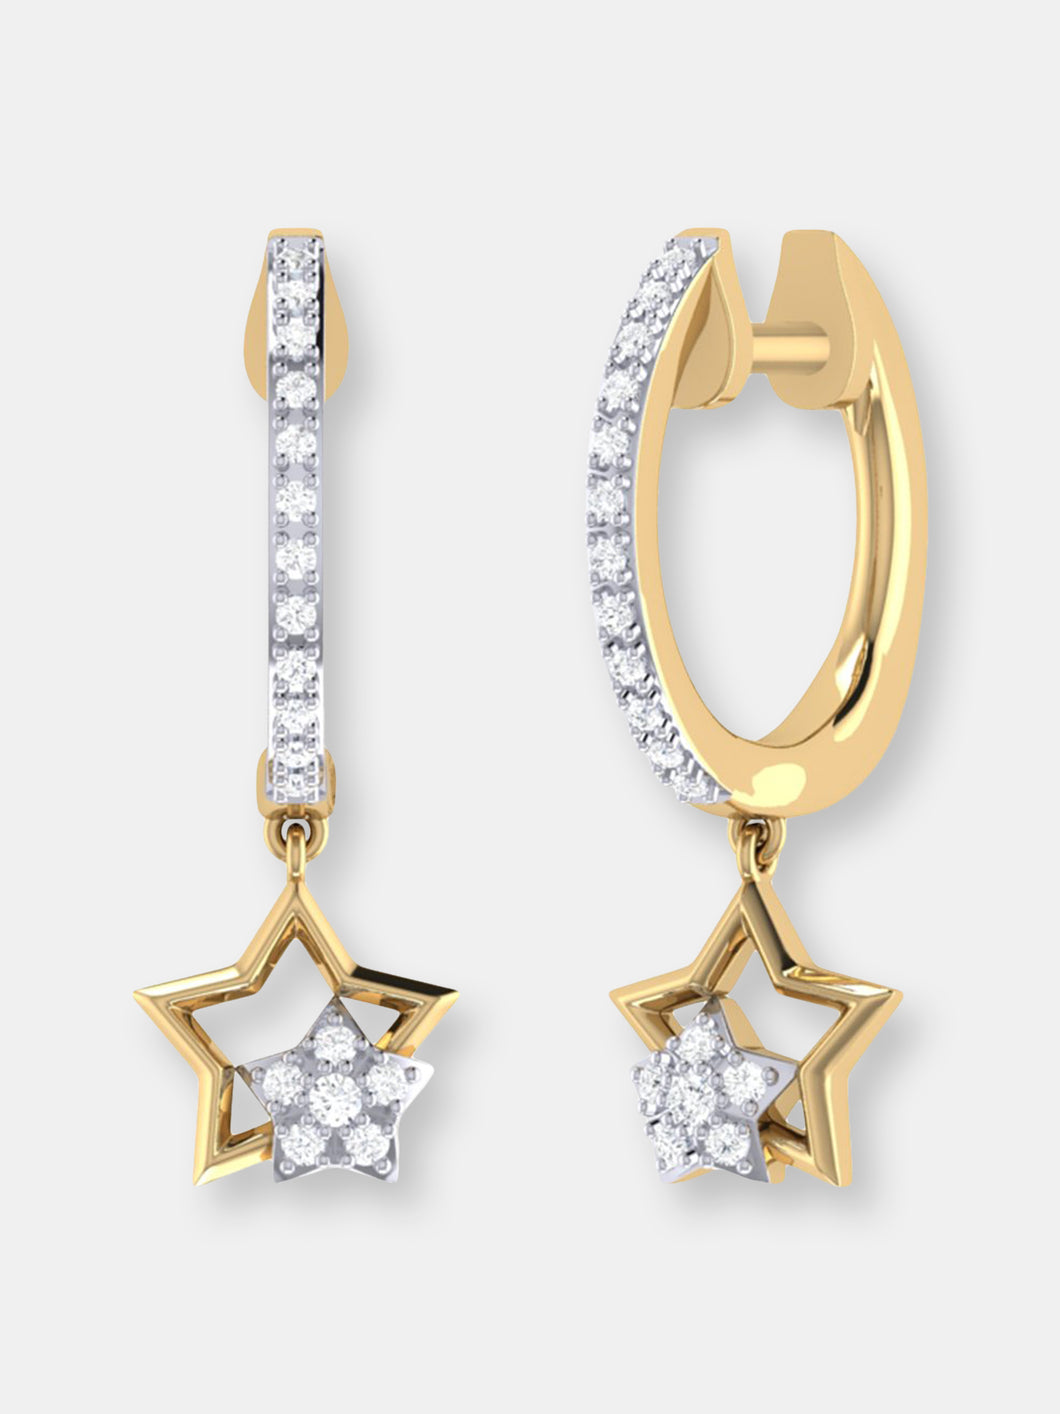 Starkissed Duo Diamond Hoop Earrings In 14K Yellow Gold Vermeil On Sterling Silver